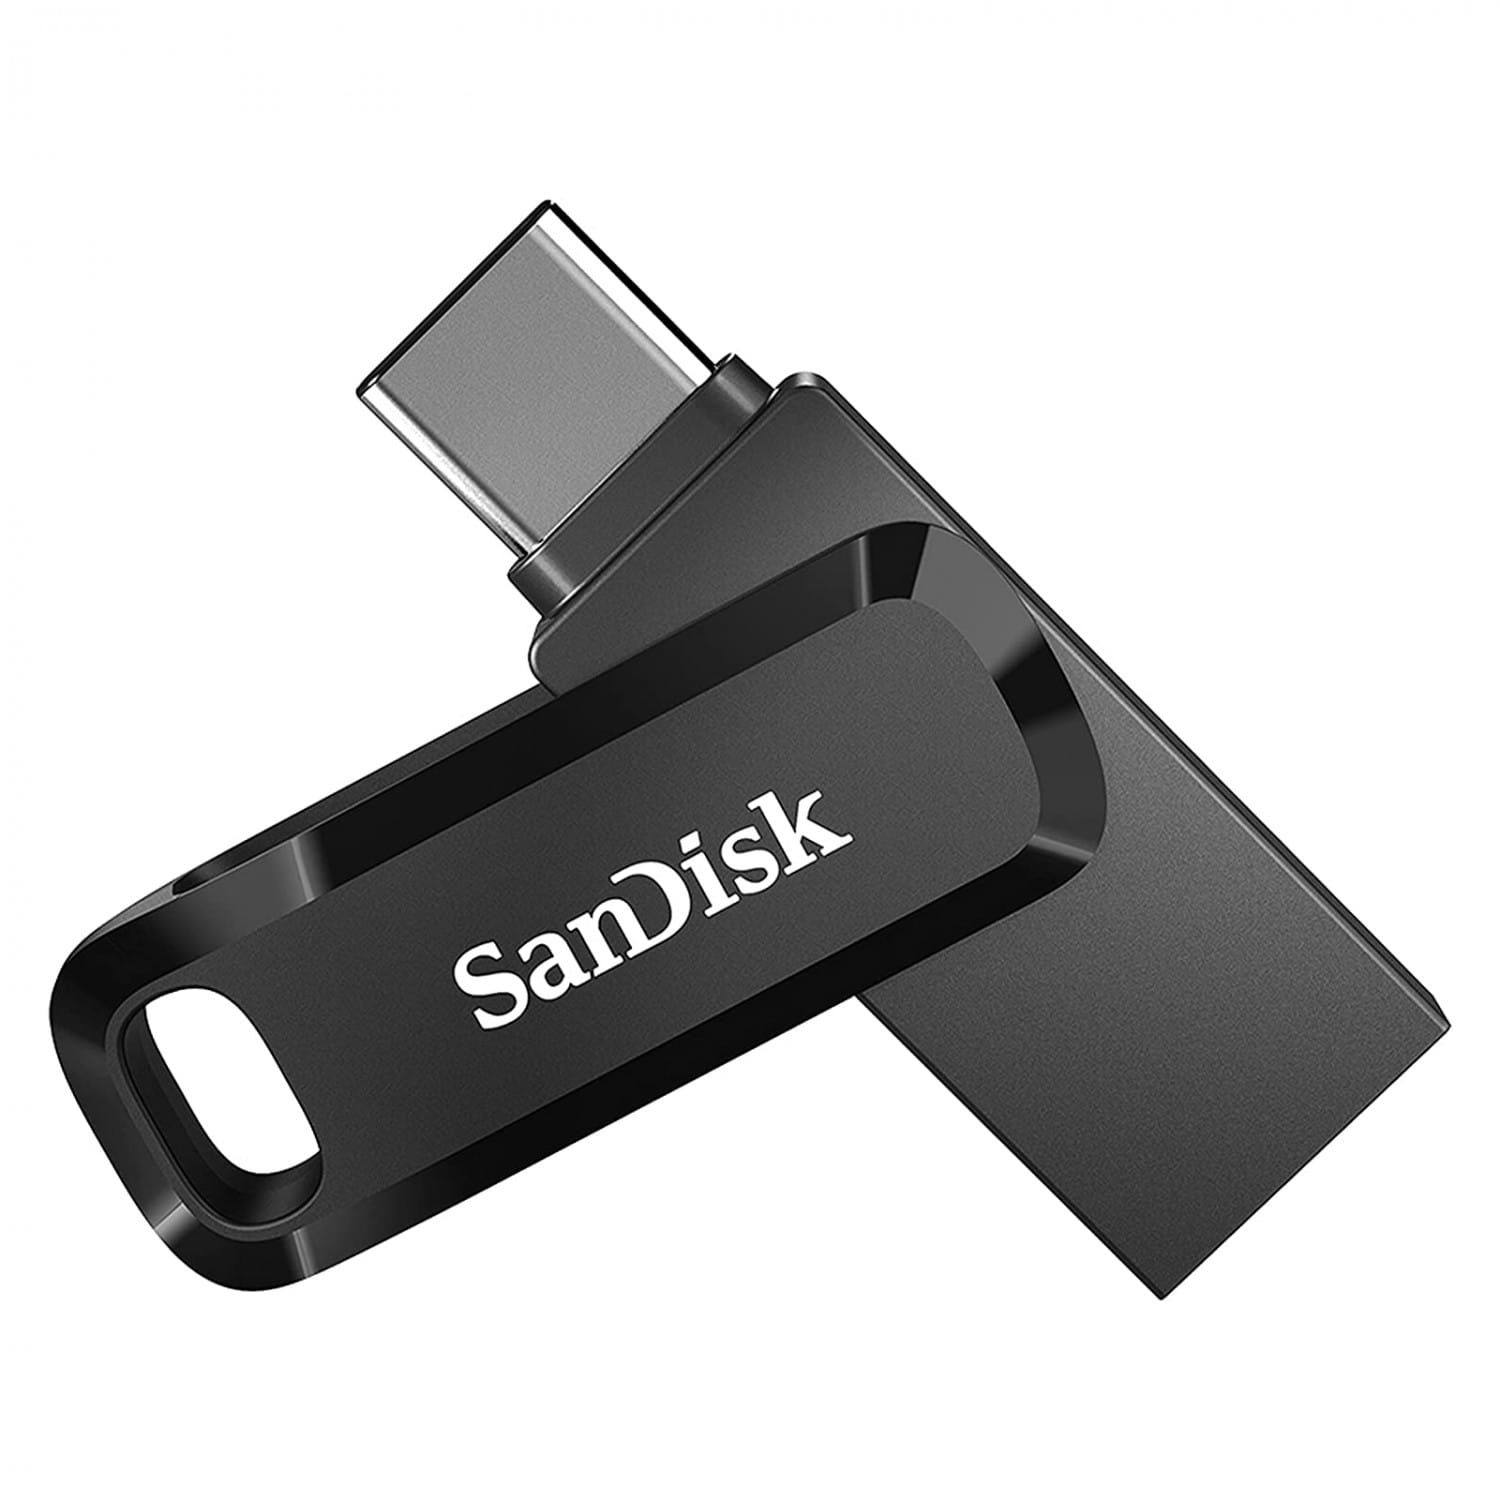 Clé USB rotative personnalisable en bois avec porte-clé. Tarif clé USB